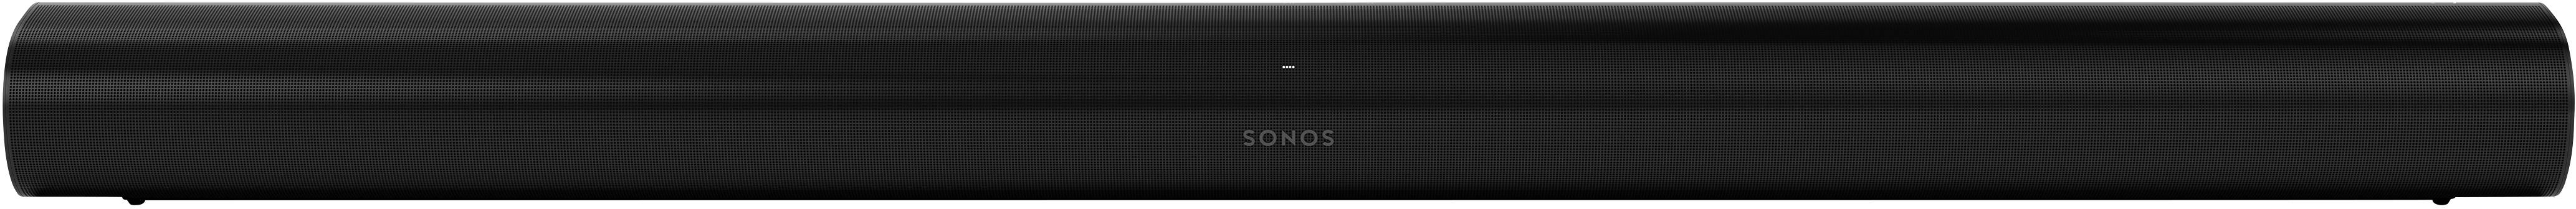 SONOS Arc Multiroom Lautsprecher Soundbar Air-Play, WLAN Amazon Alexa direkt integriert, Google